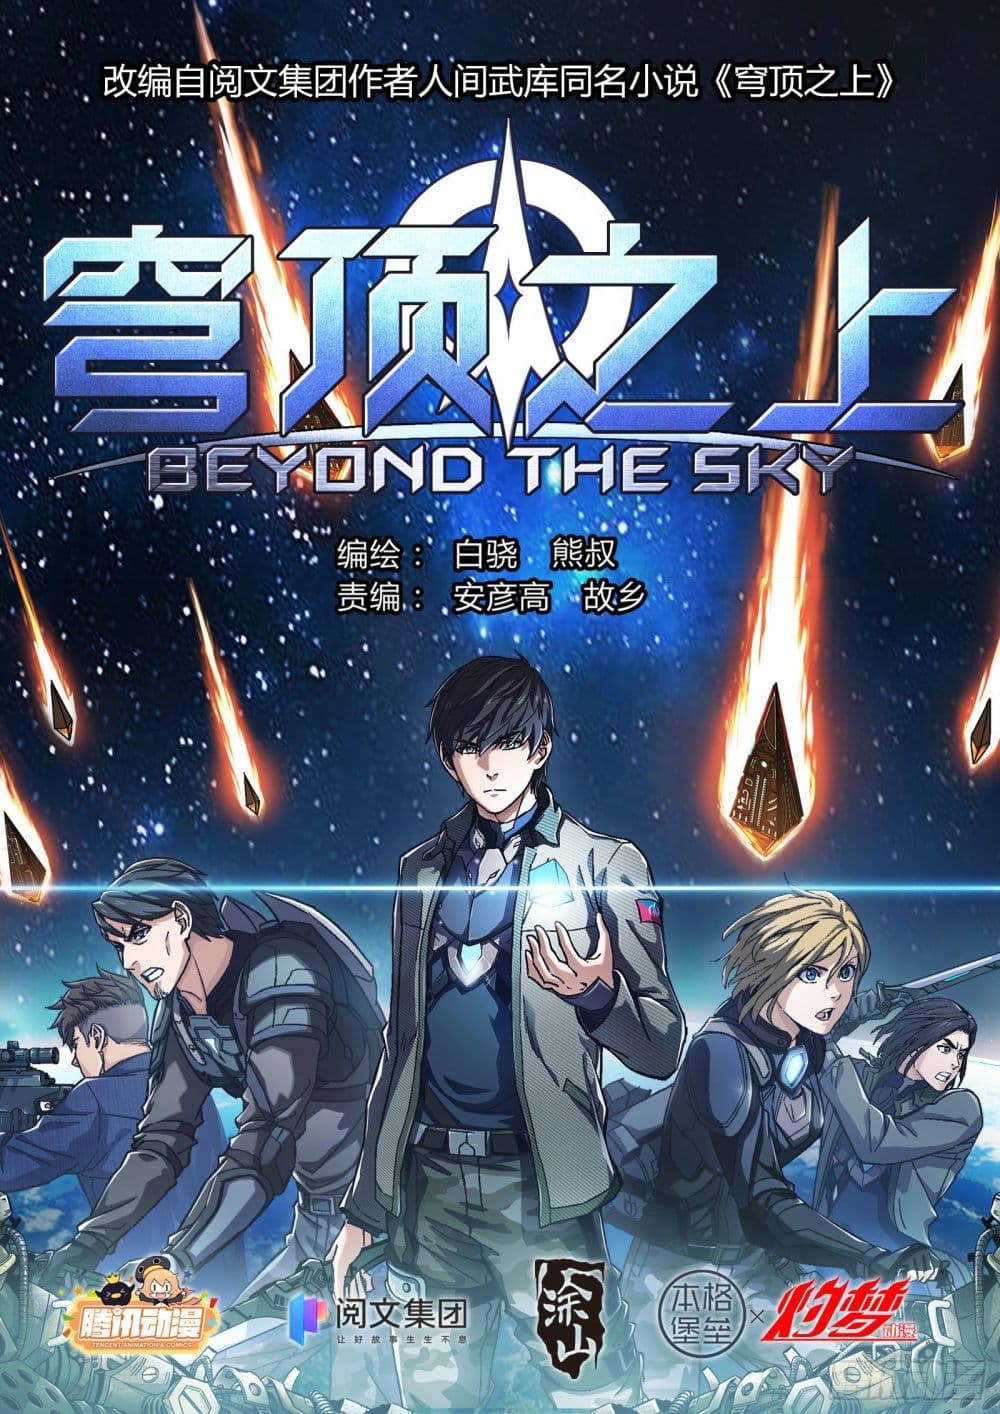 Beyond The Sky 15 (1)